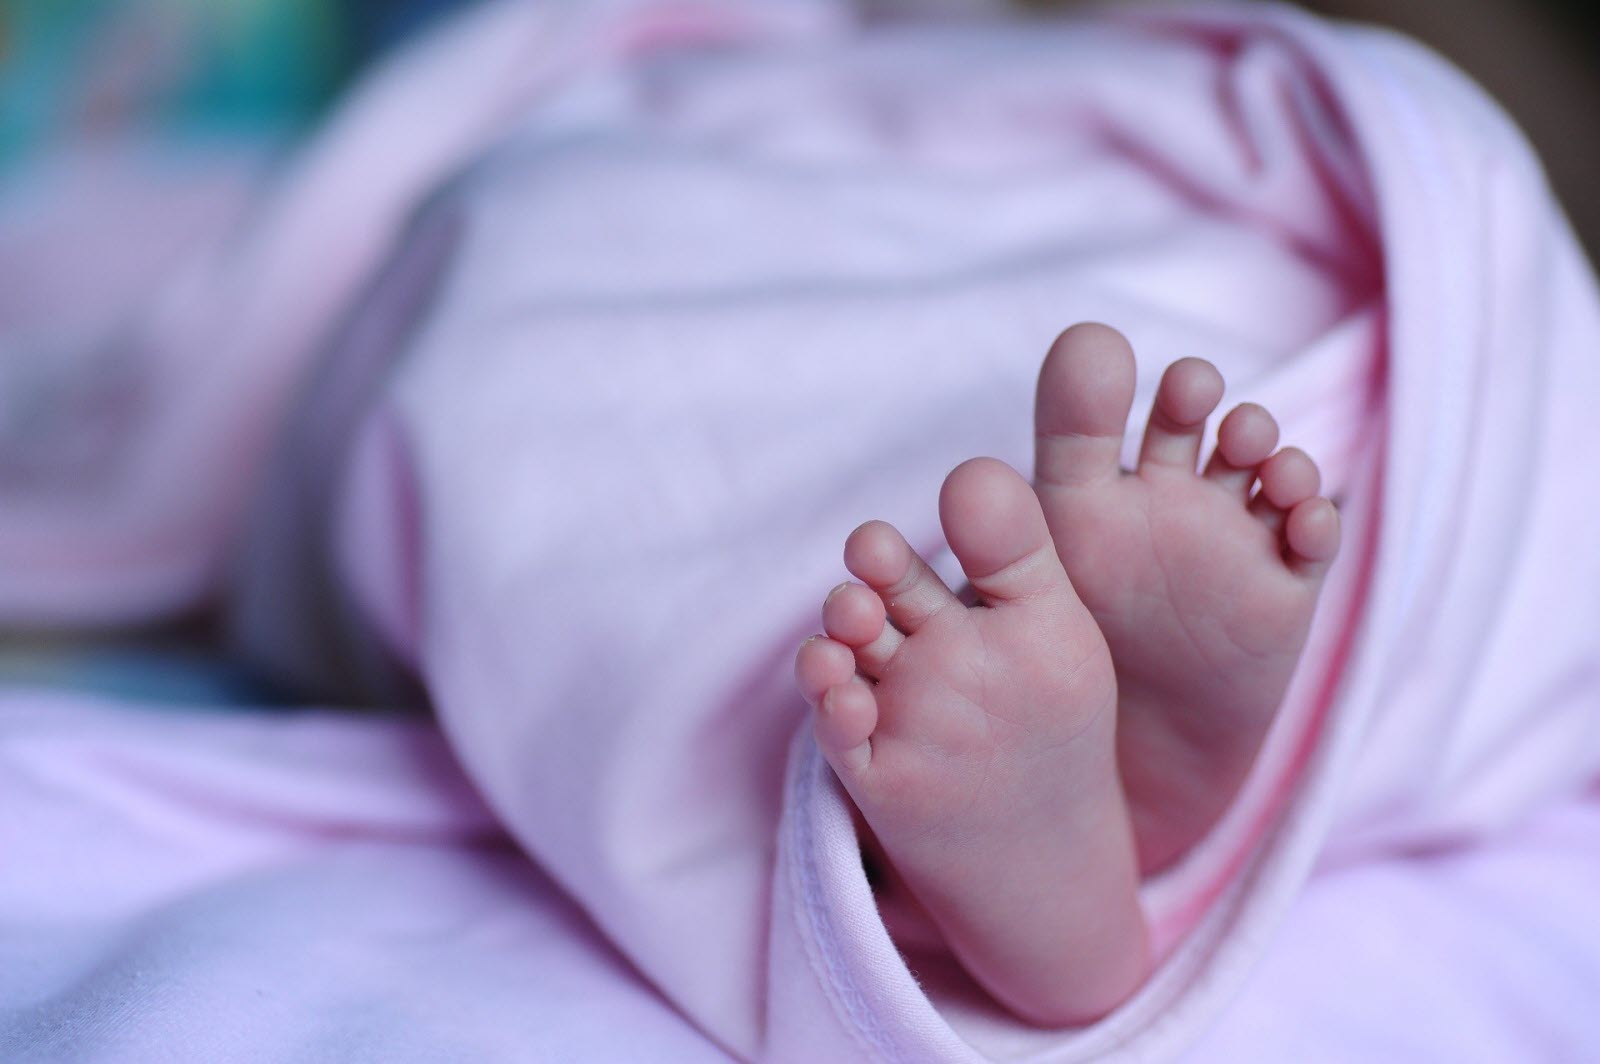 ”Quelle est la raison d’être de la naissance d’un enfant qui meurt prématurément?”